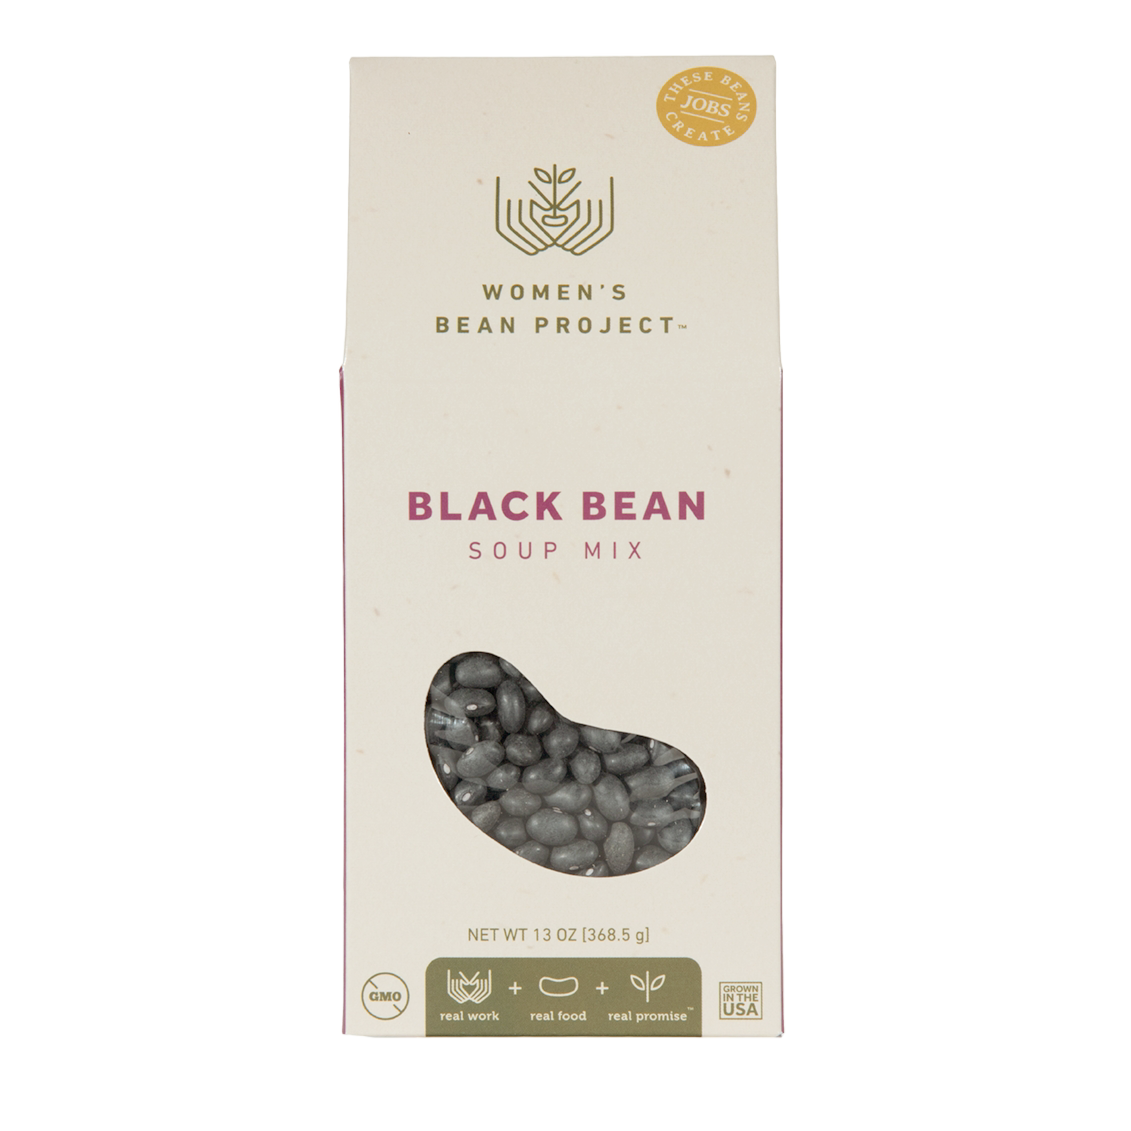 Black Bean Soup Kit